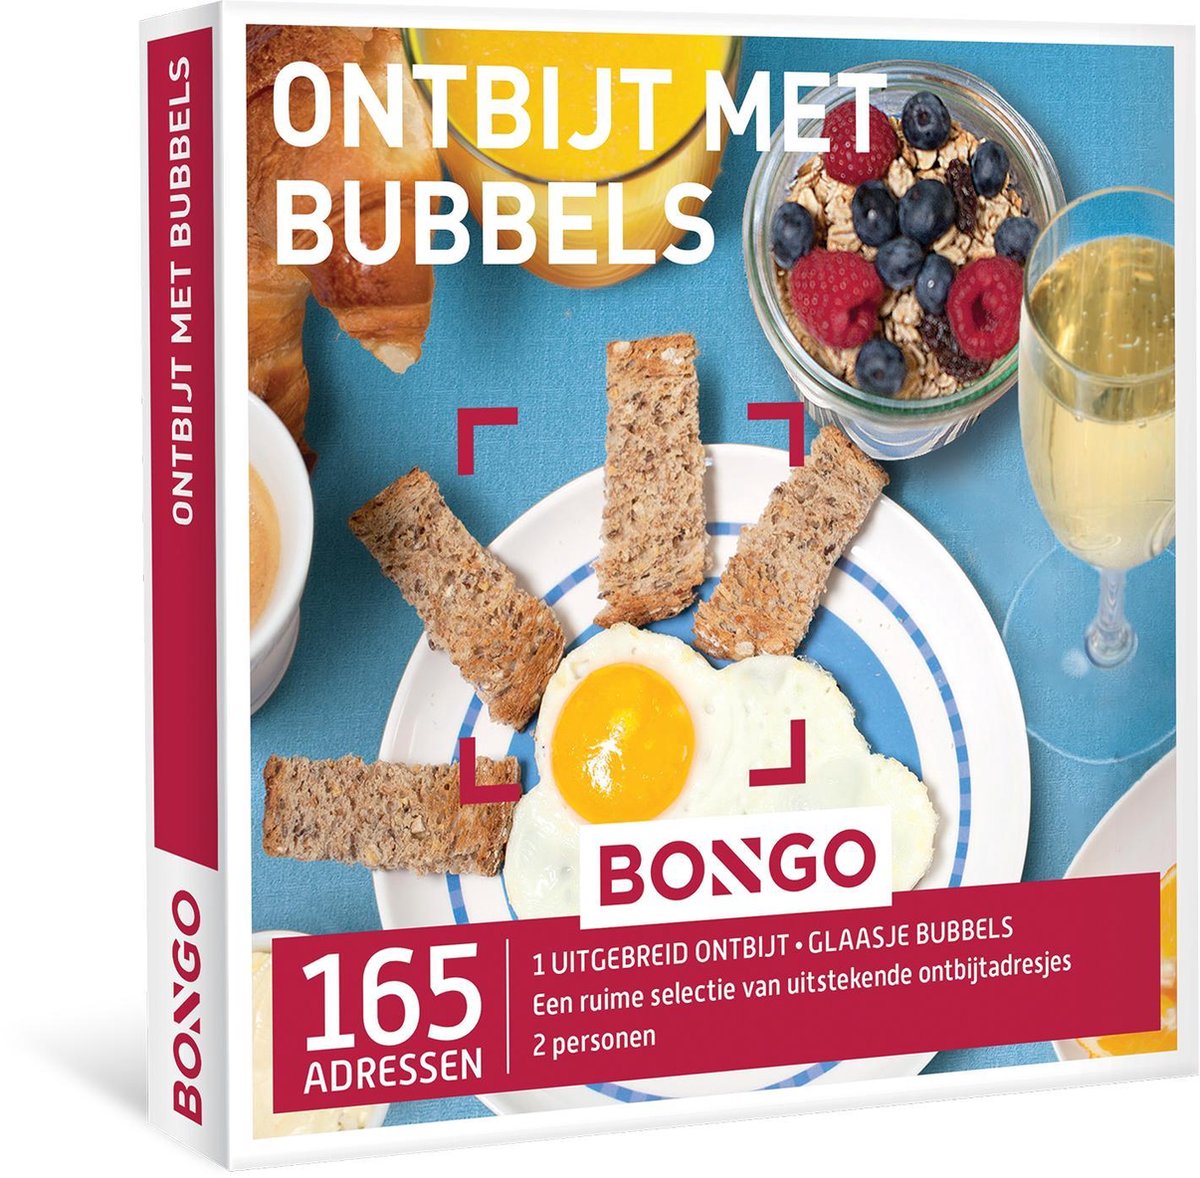 Ontbijt met Bubbels - Bongo Bon | bol.com